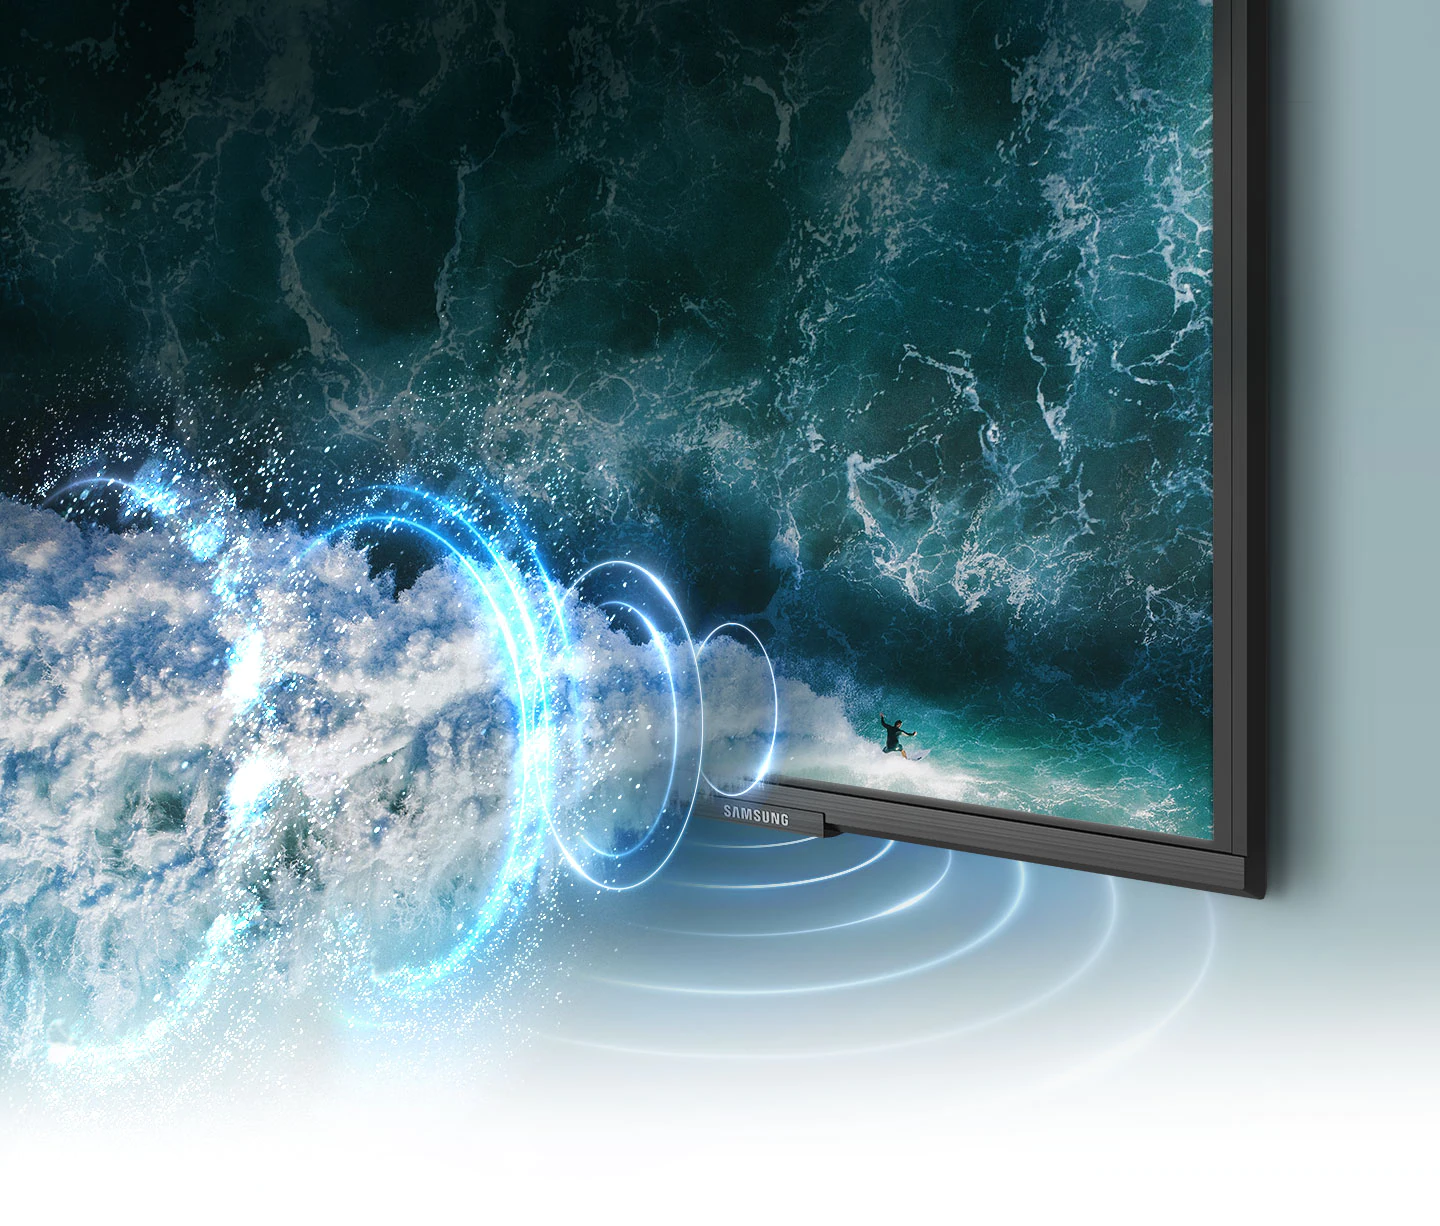 Televízor Samsung QE43Q65A ponúka virtuálny 3D zvuk s podporou technológií, ako je OTS Lite, Q-Symphony alebo Dolby Digital Plus, ktoré vás lepšie vtiahnu do deja.